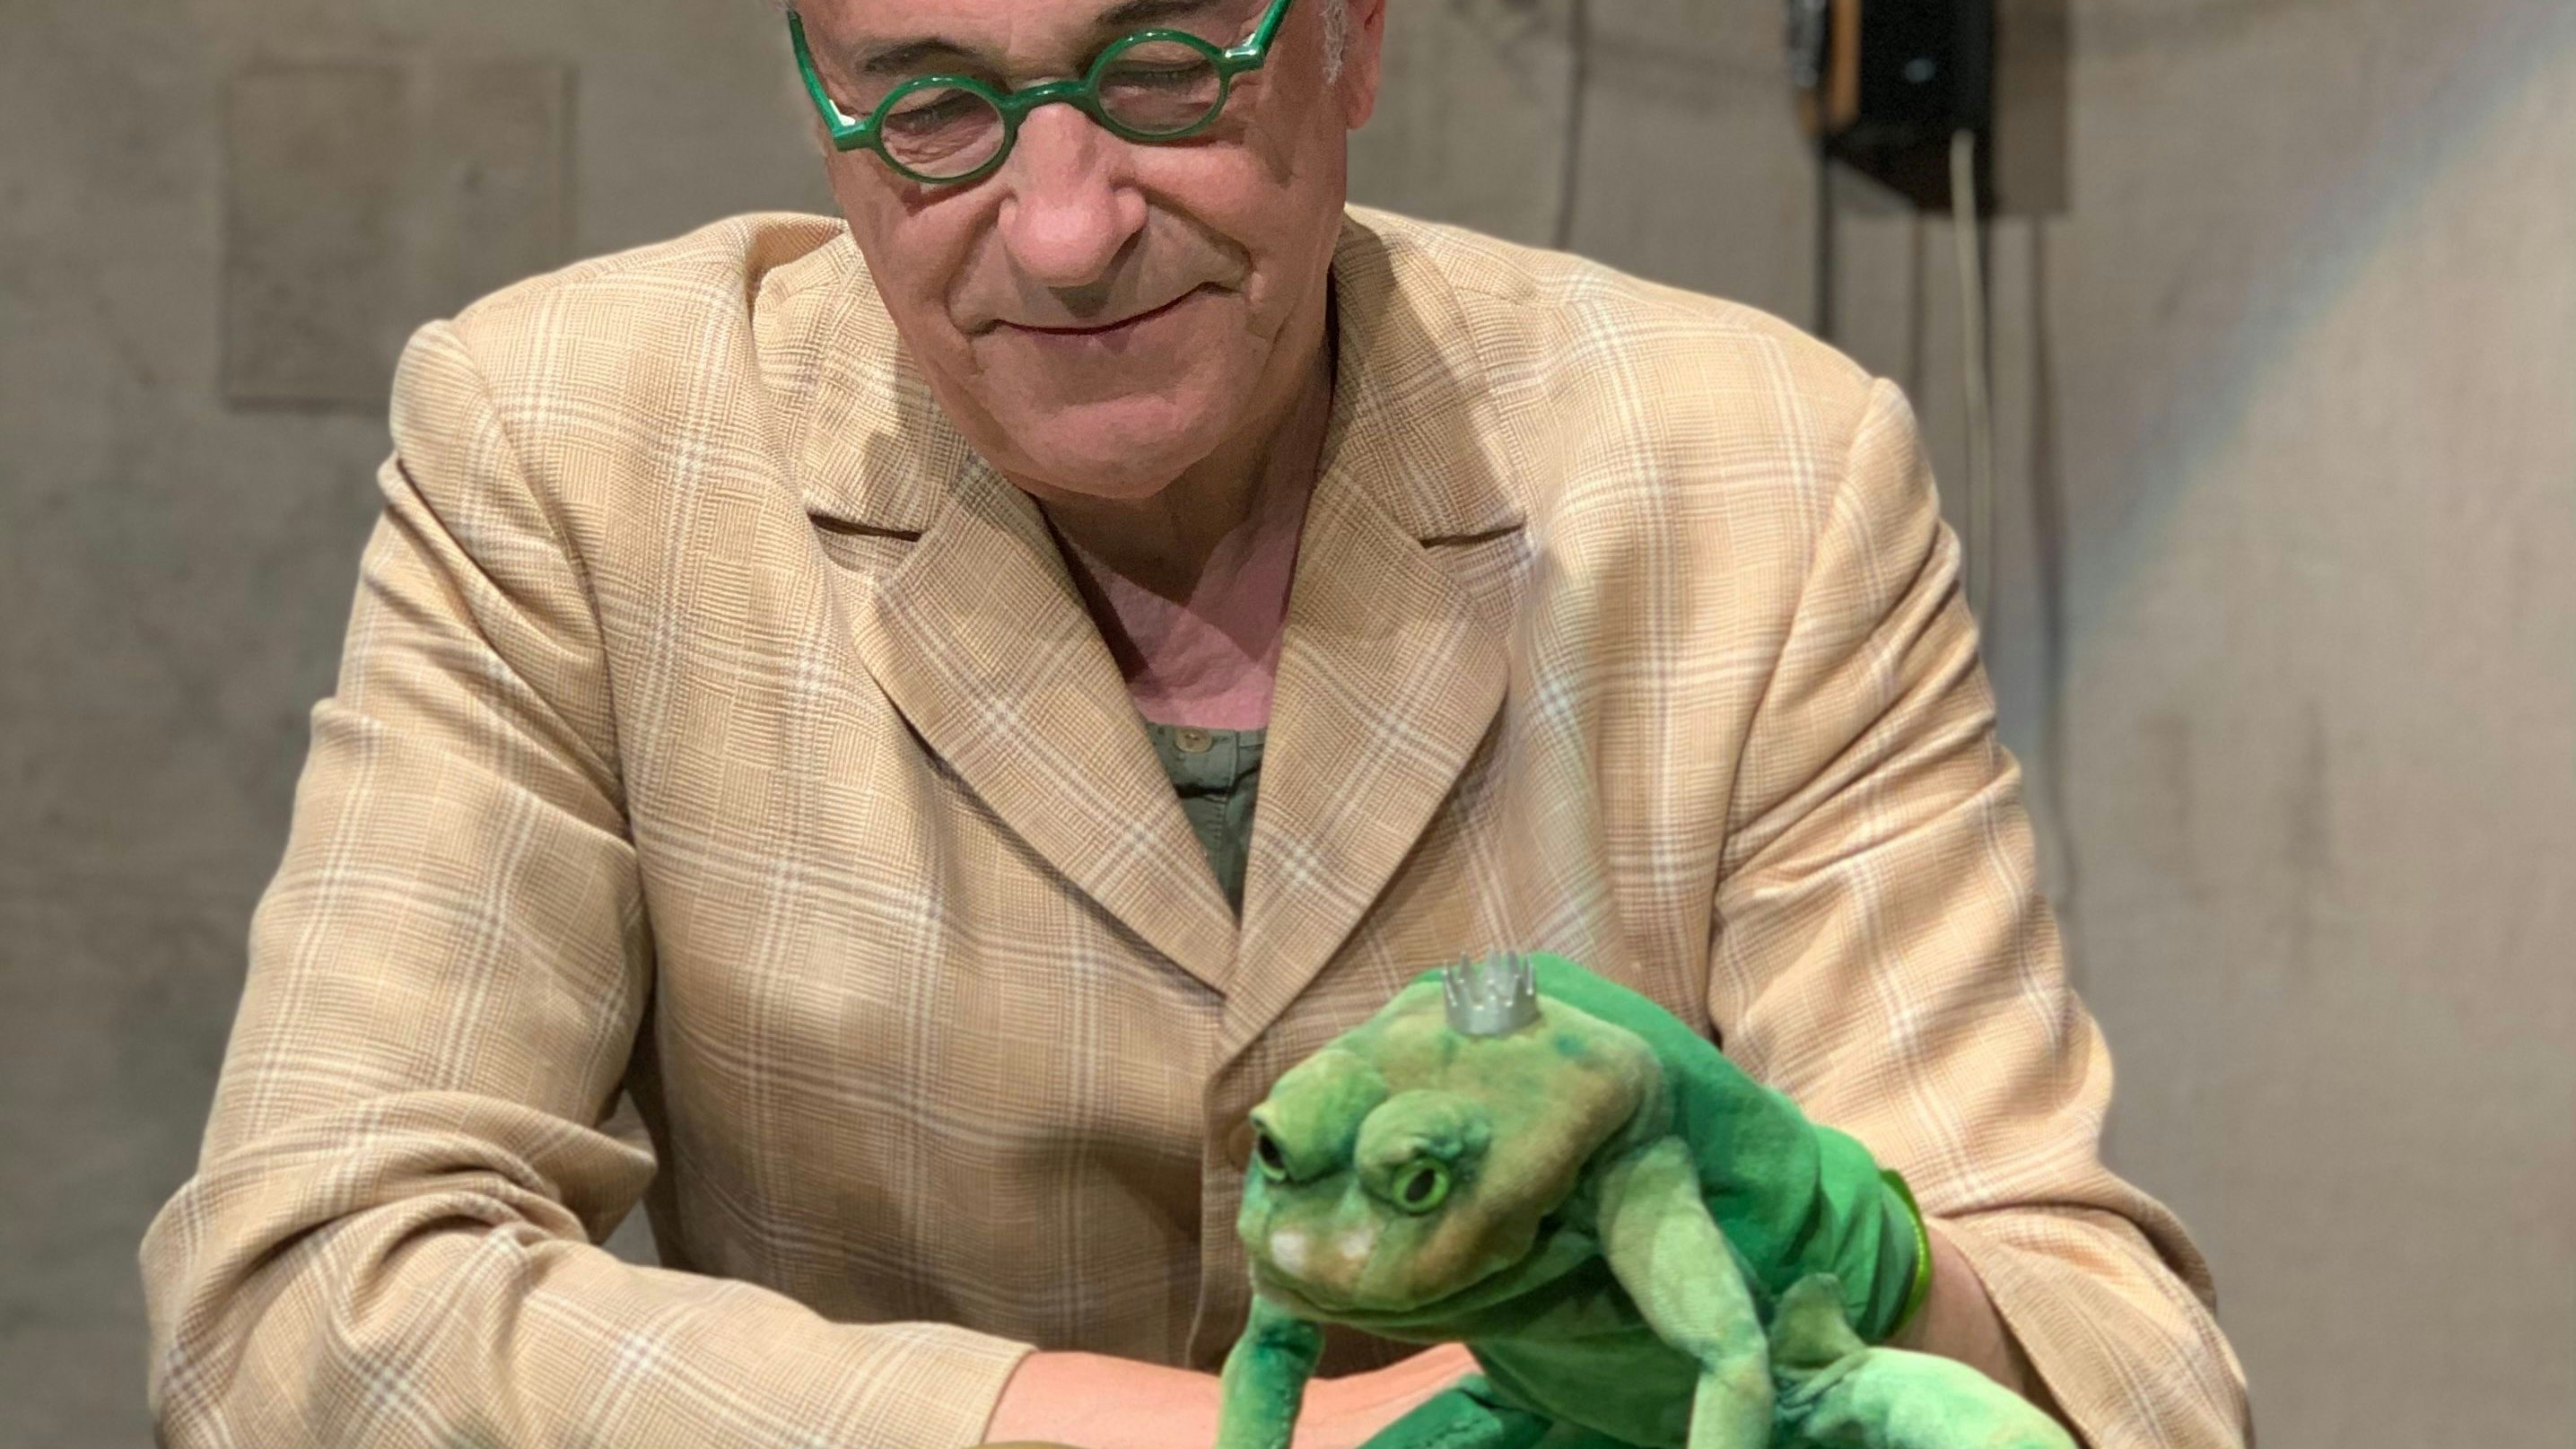 Mit Witz und Charme: Theater-Chef Pavel Möller-Lück fasziniert sein Publikum mit seiner Geschichte vom Froschkönig. Foto: Theater Laboratorium